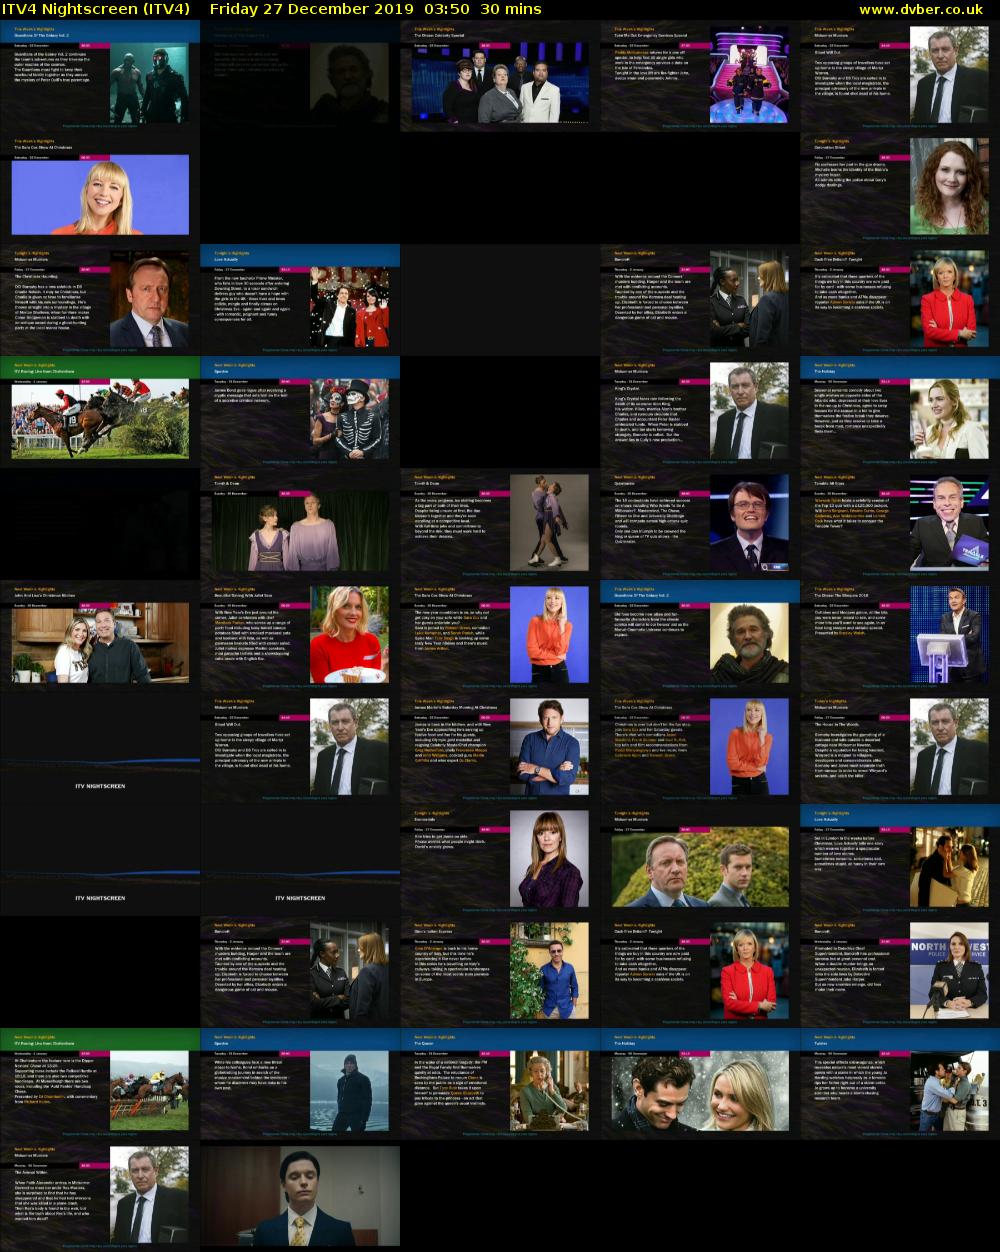 ITV4 Nightscreen (ITV4) Friday 27 December 2019 03:50 - 04:20